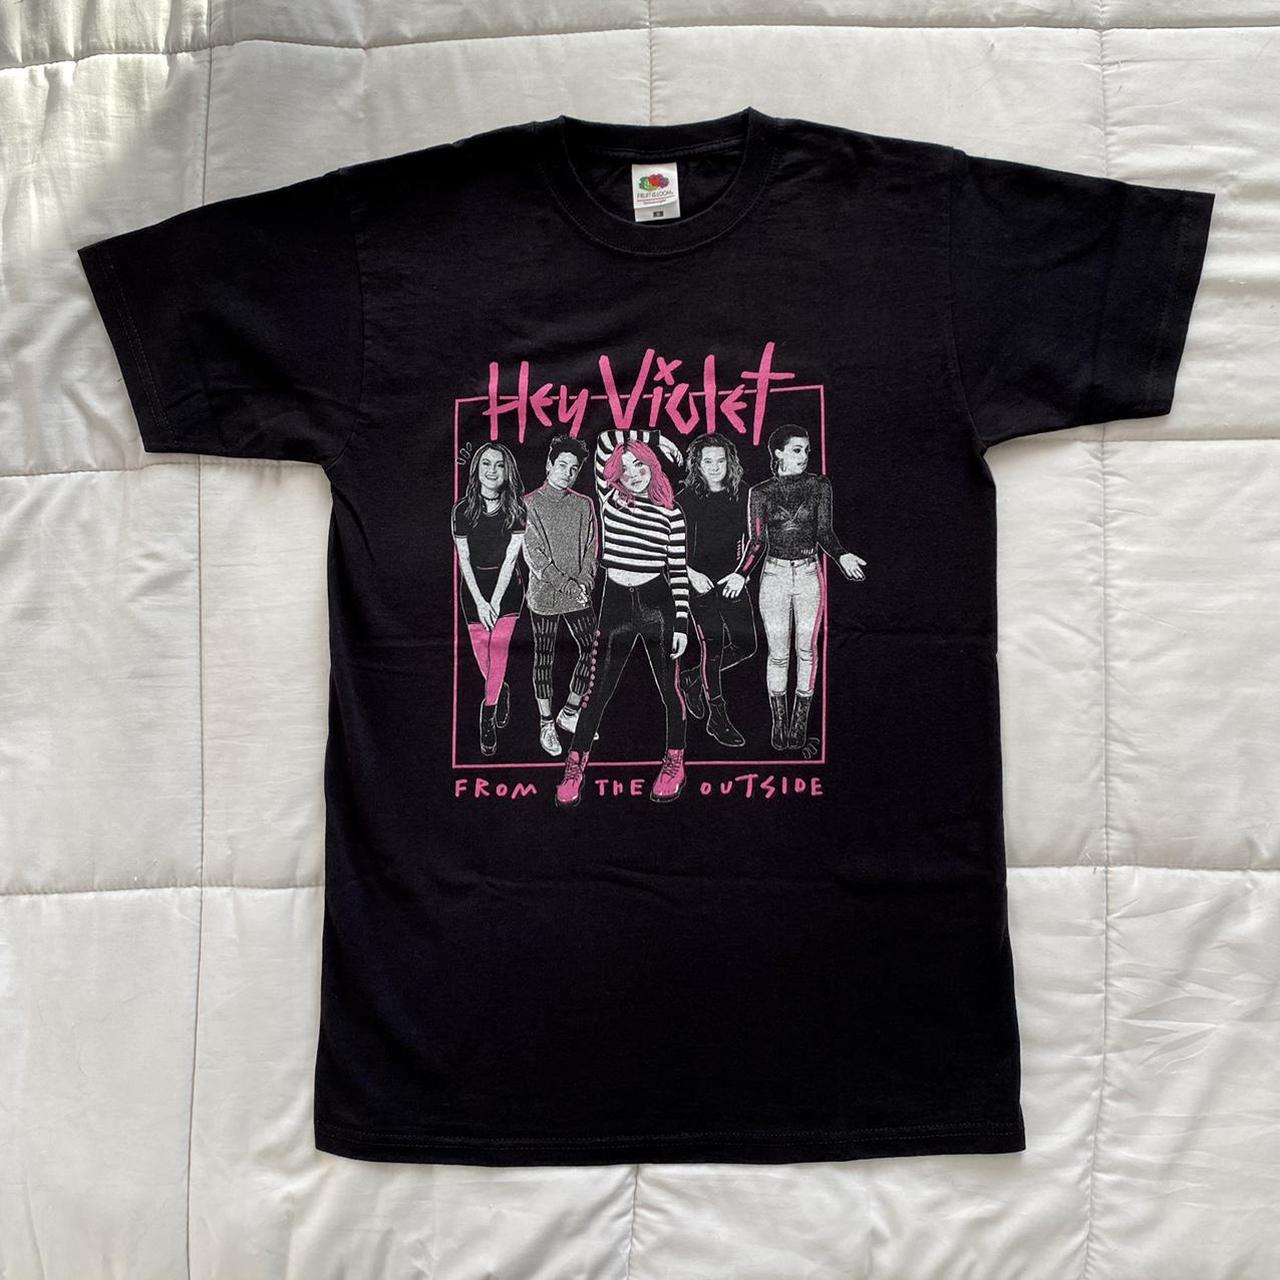 Product Image 1 - Maglietta degli Hey Violet acquistata